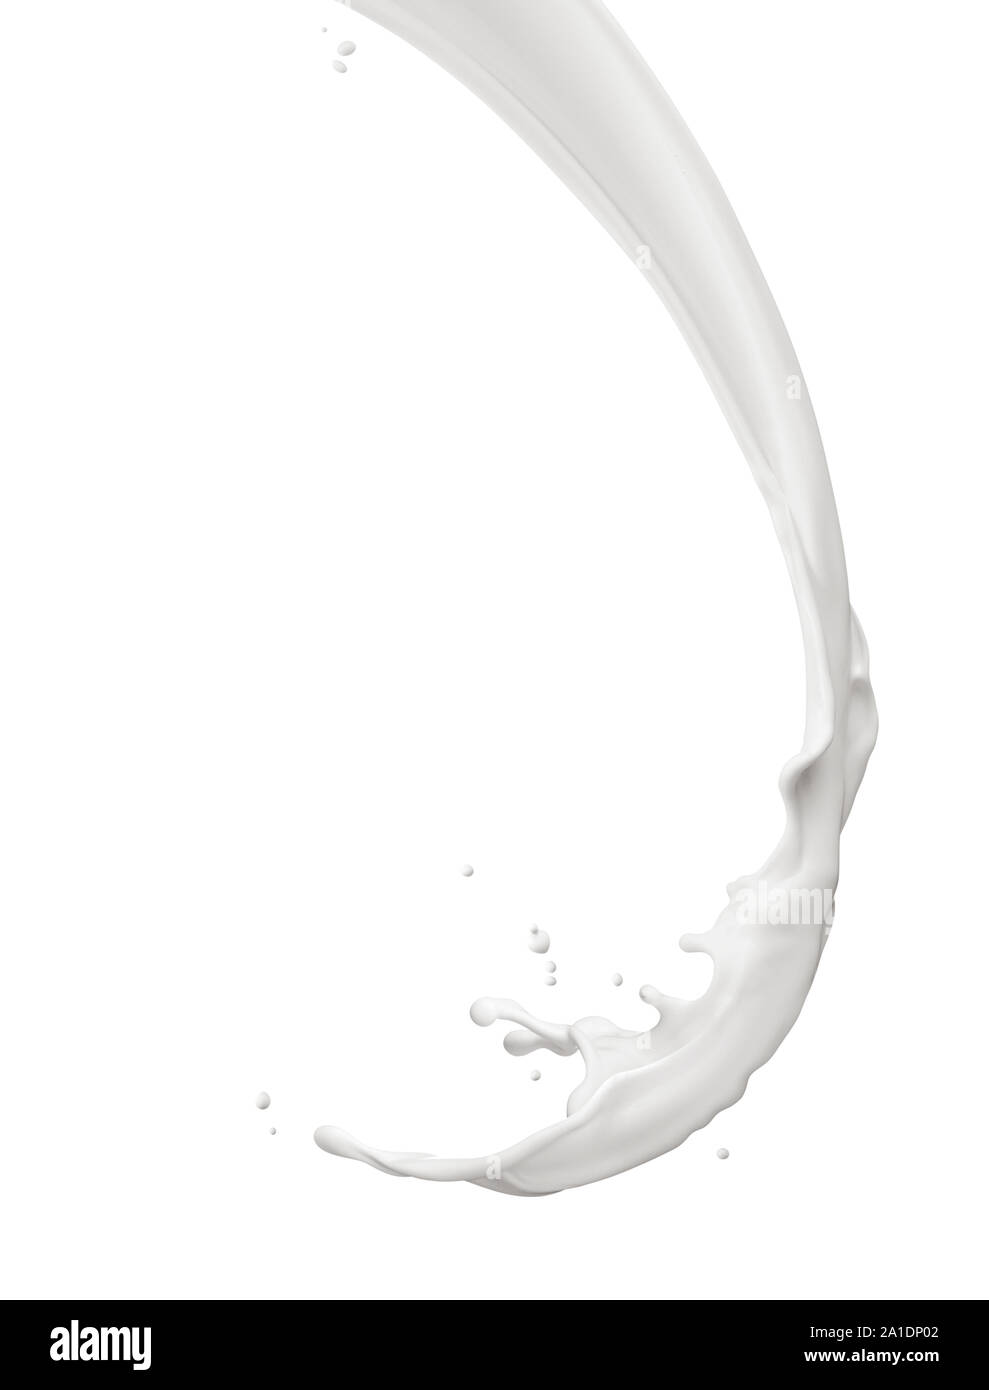 splash of milk isolated on white background Stock Photo